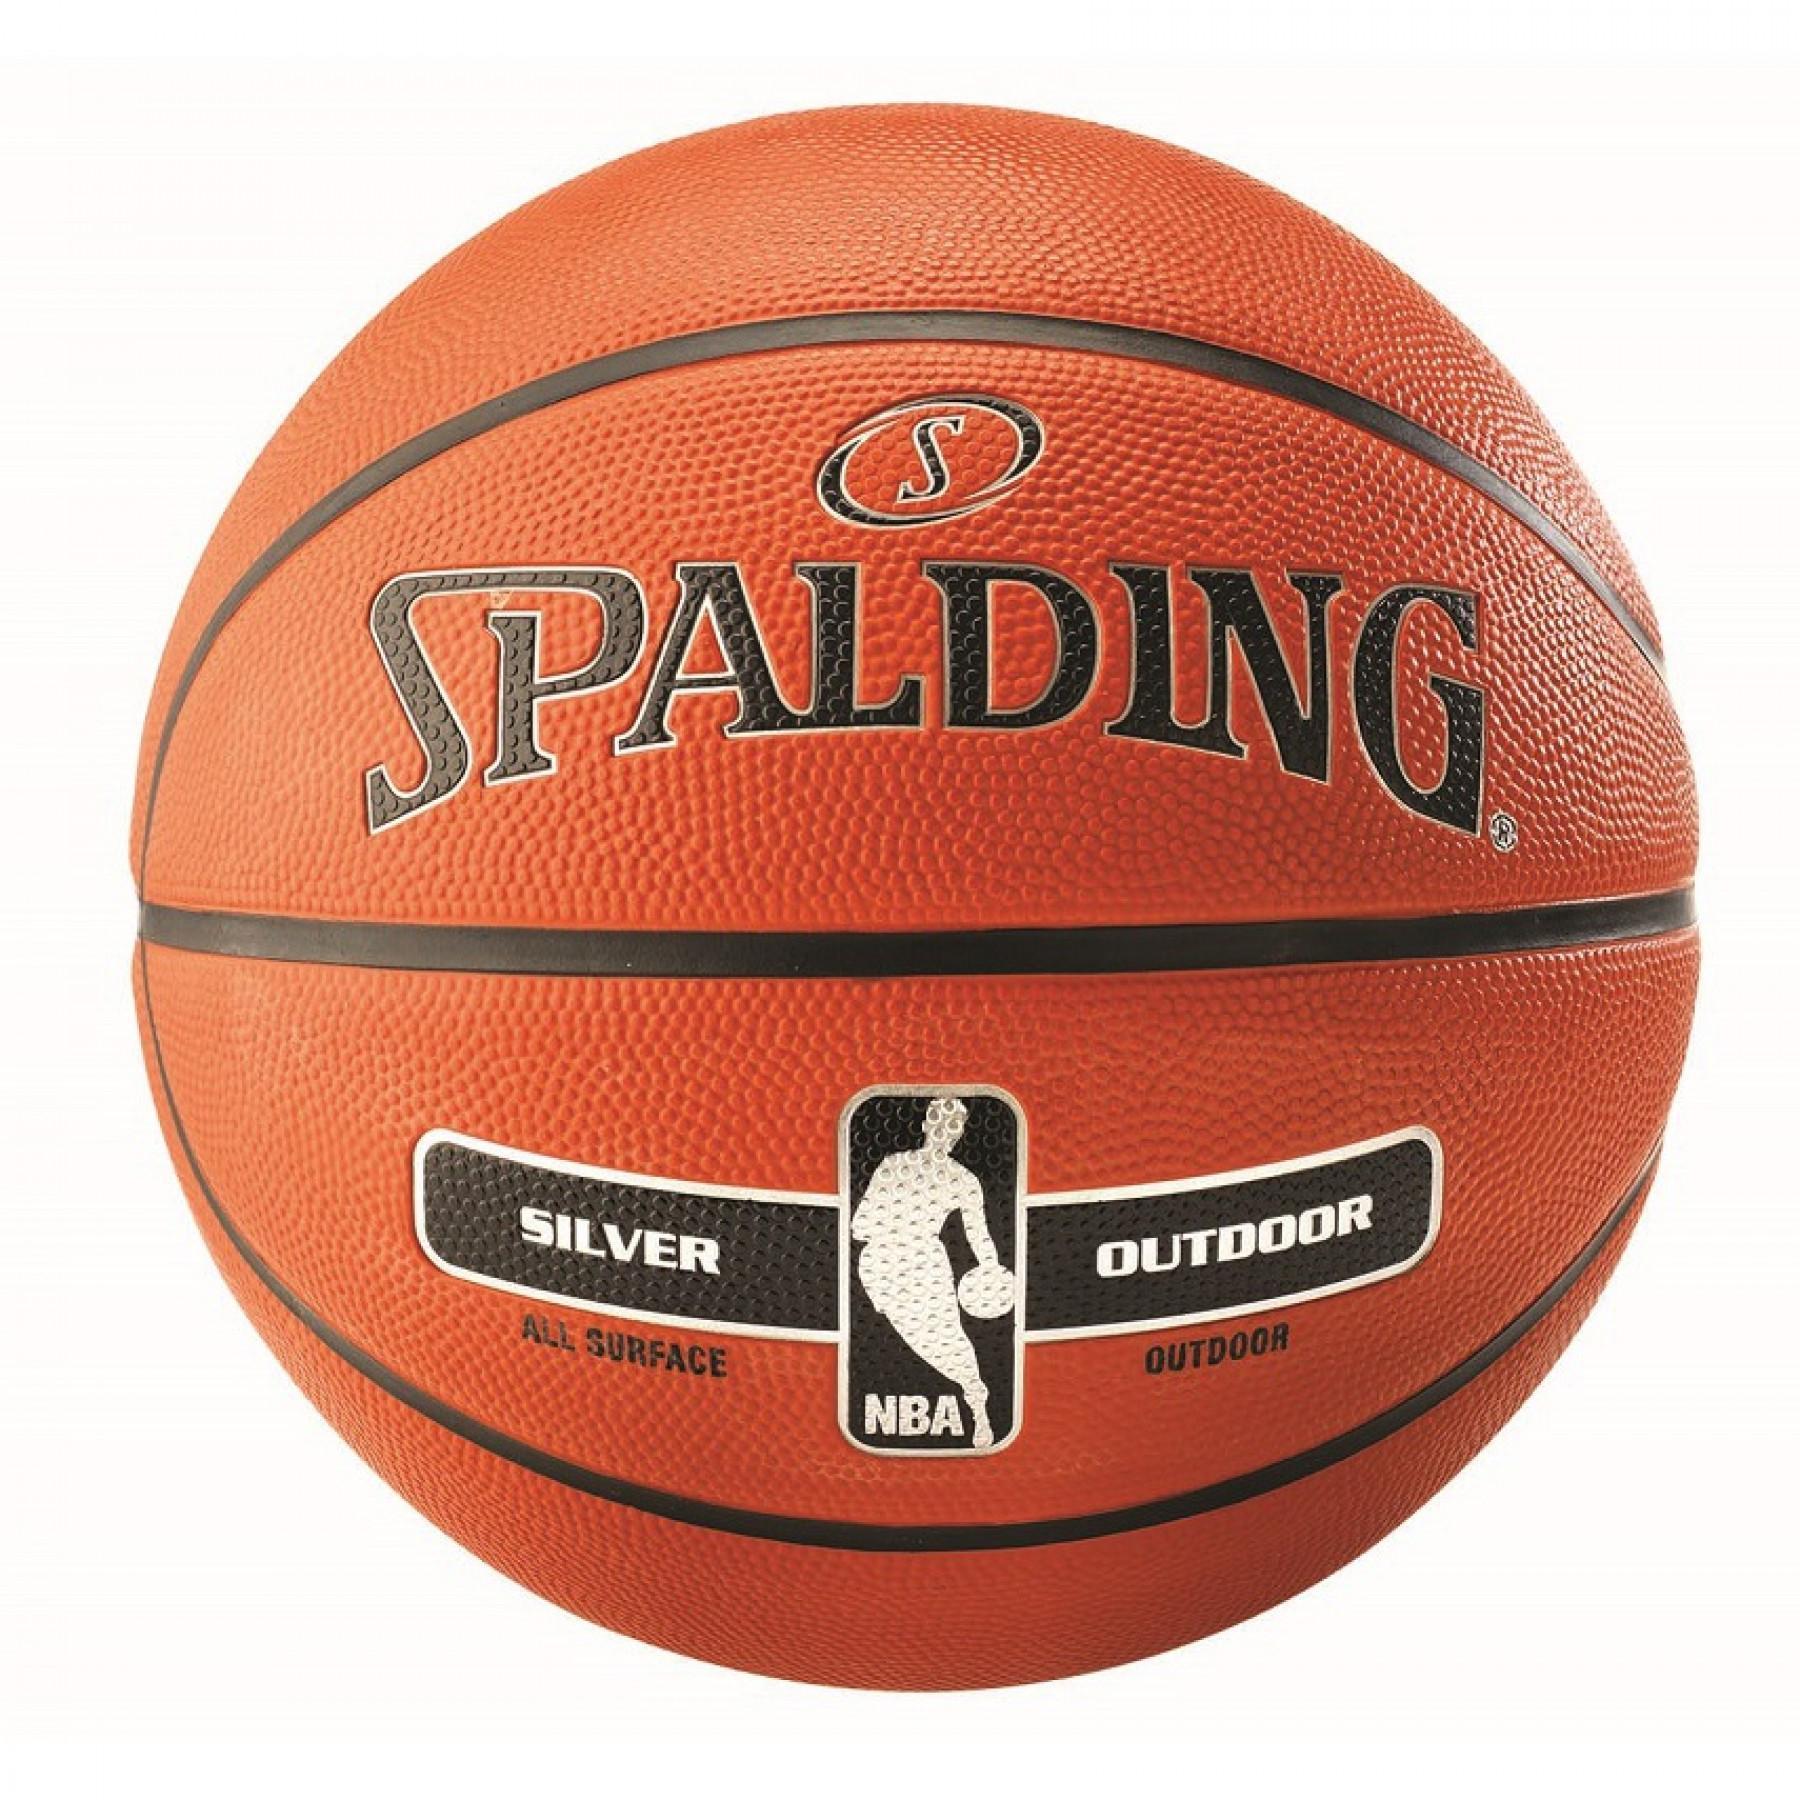 Balloon Spalding NBA Silver Outdoor